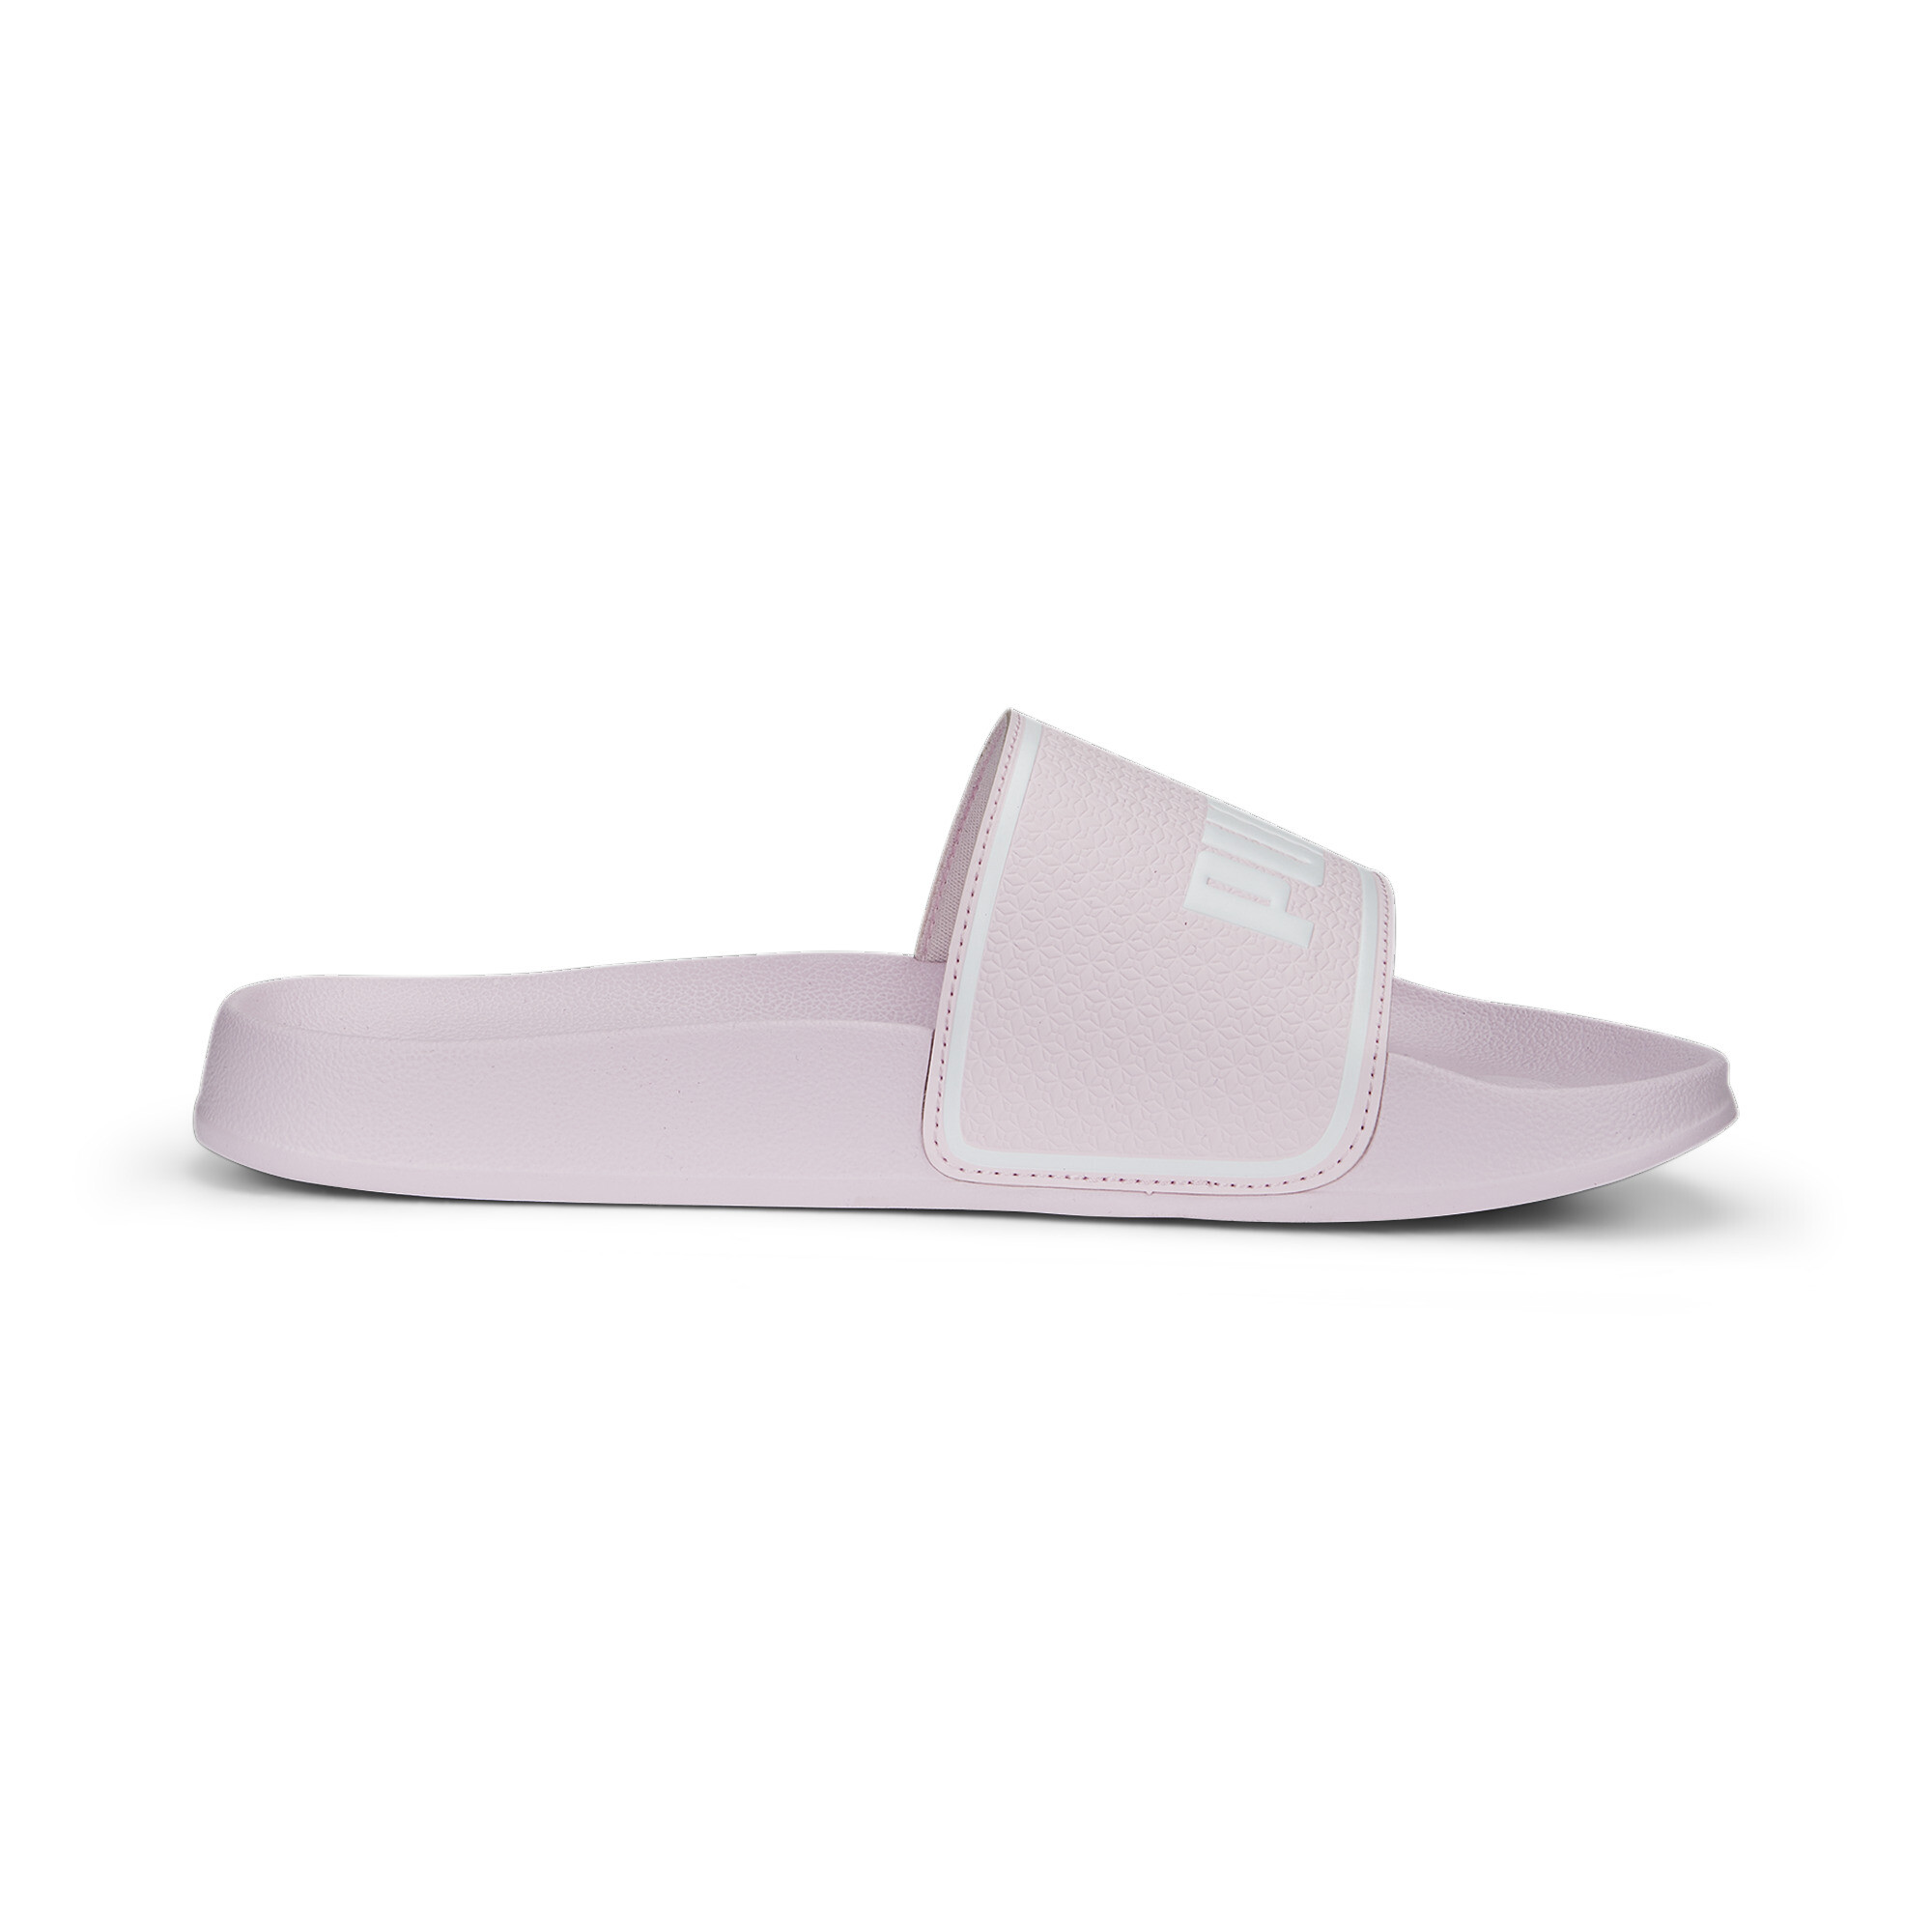 Men's PUMA Leadcat 2.0 Sandals In Pink, Size EU 48